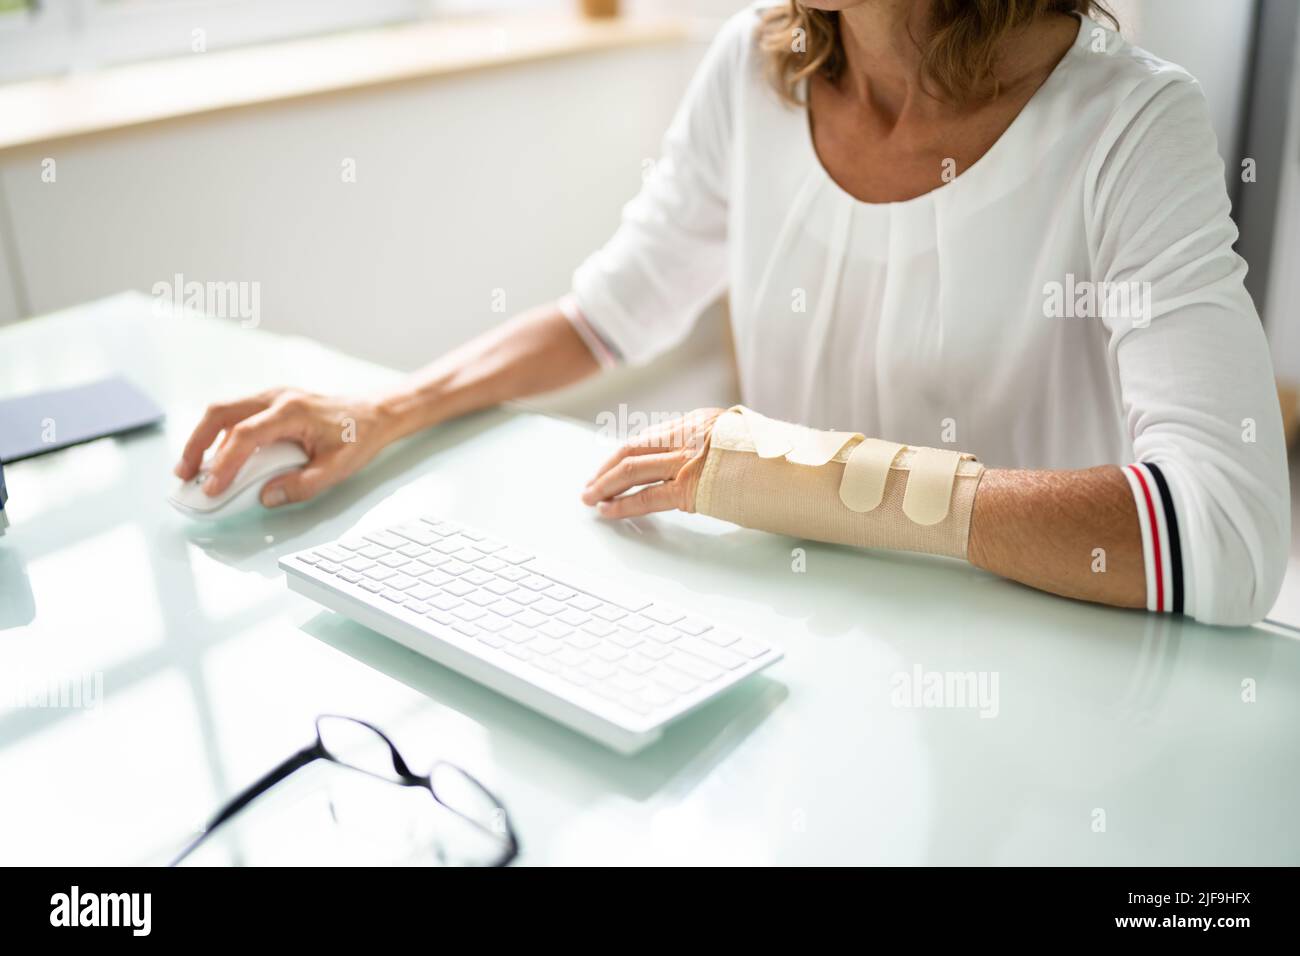 Bürounfall Mit Gebrochenem Arm. Arbeitnehmervergütung Und Sozialversicherung Stockfoto